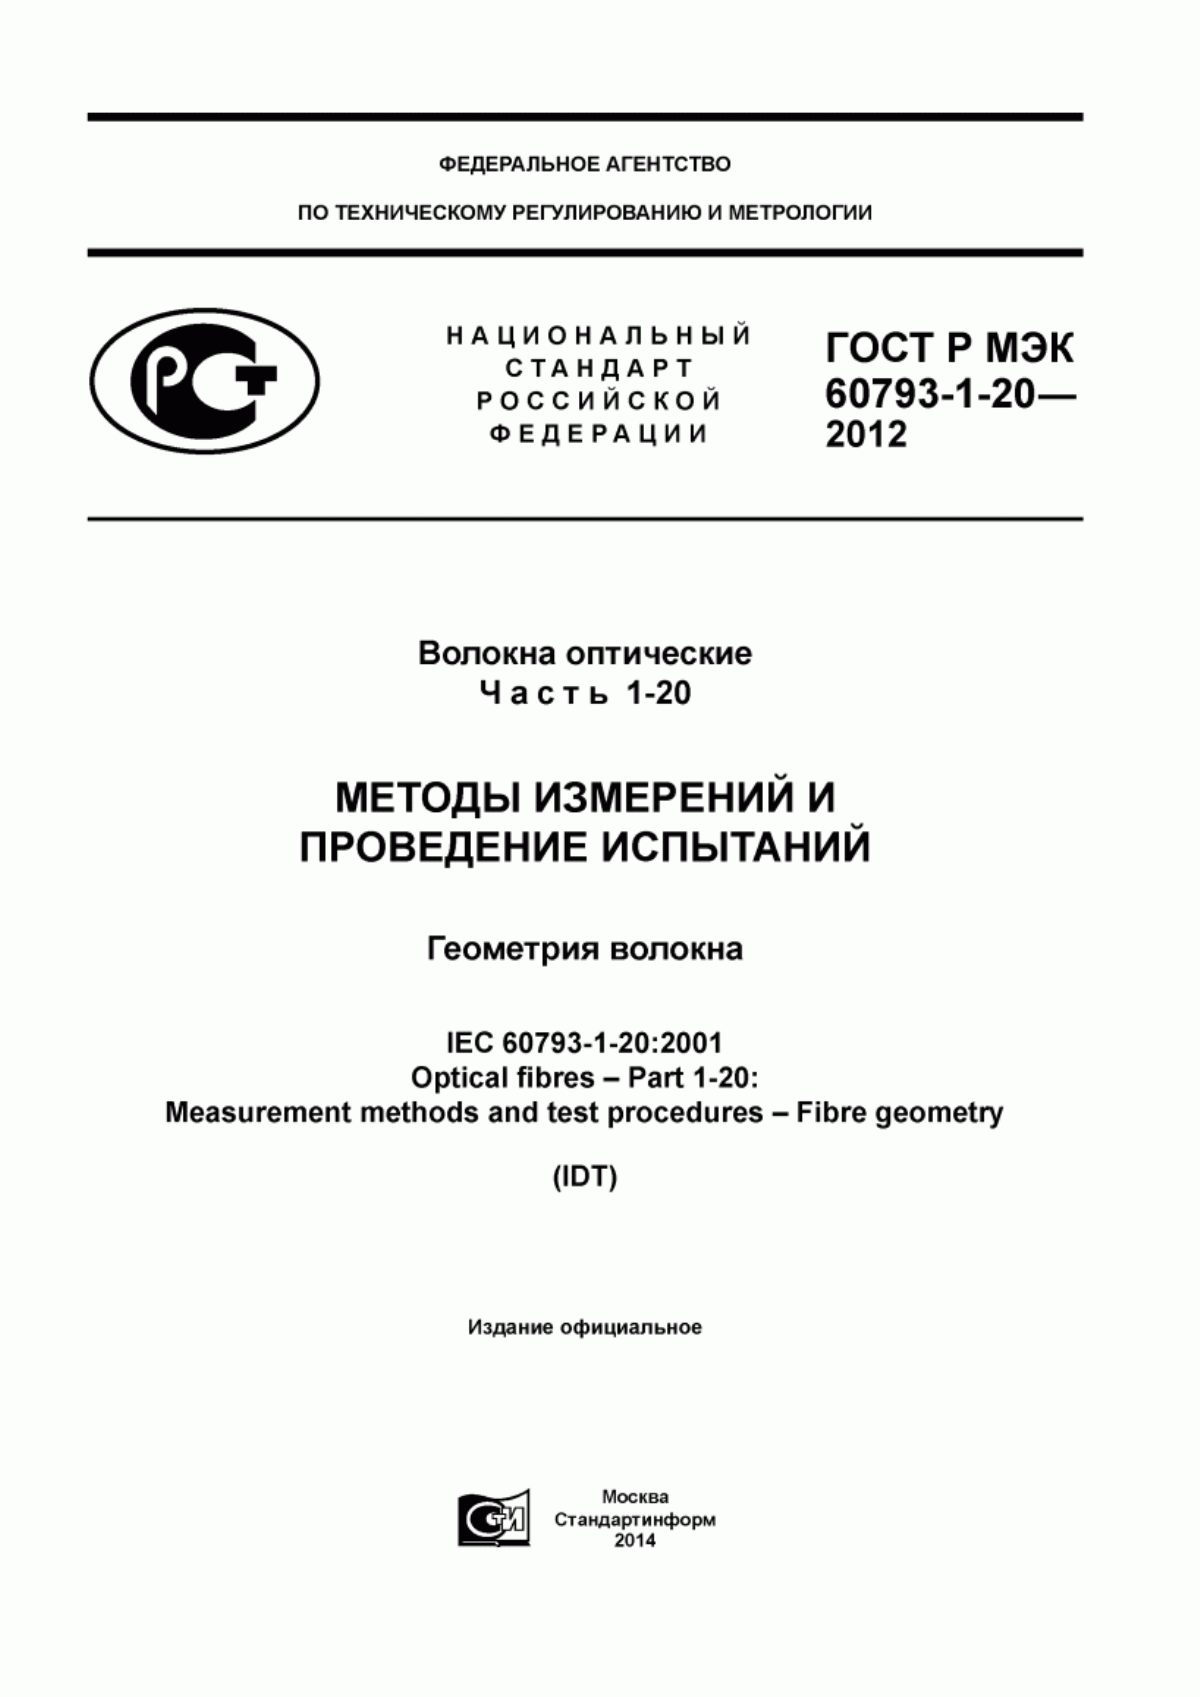 ГОСТ Р МЭК 60793-1-20-2012 Волокна оптические. Часть 1-20. Методы измерений и проведение испытаний. Геометрия волокна